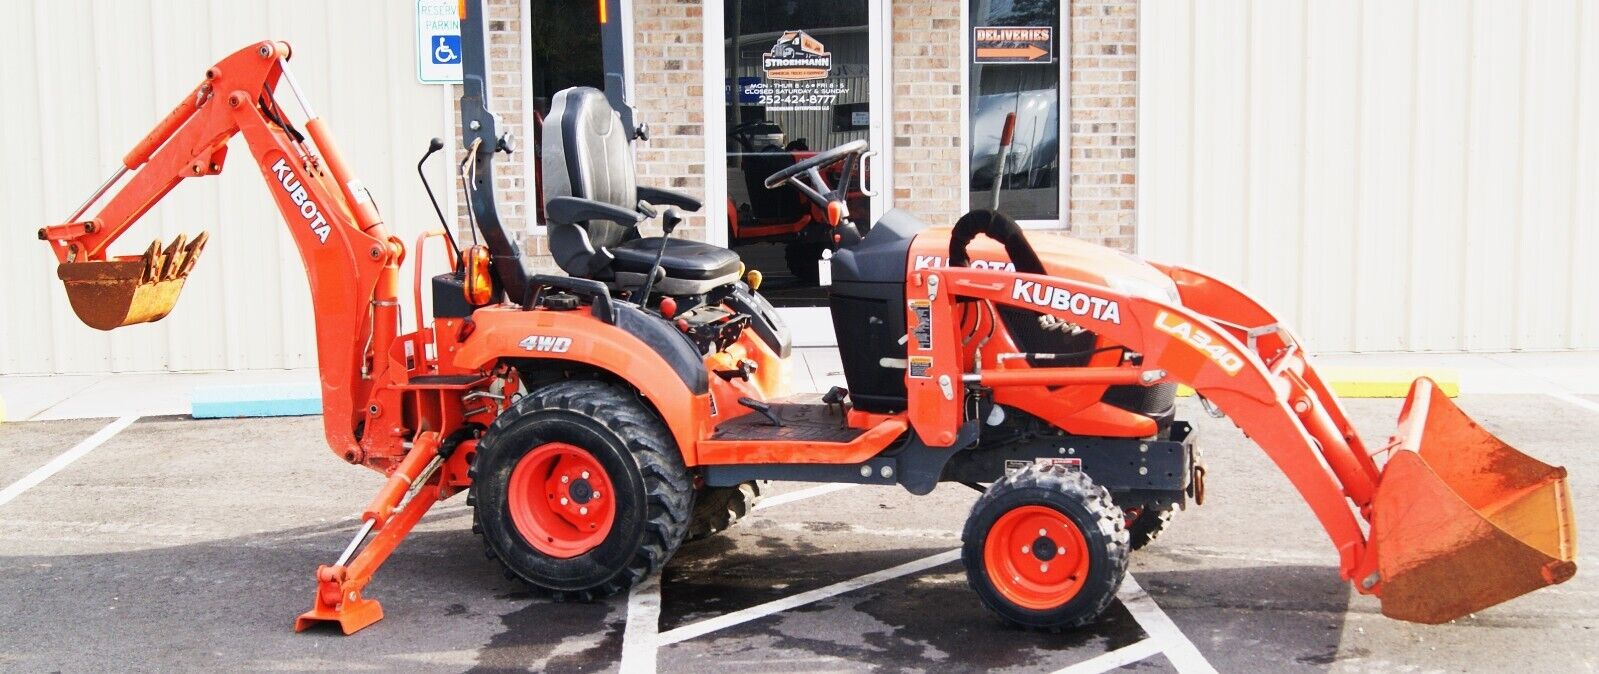 2019 Kubota BX23S Tractor Loader Excavator Backhoe 1200 Hours